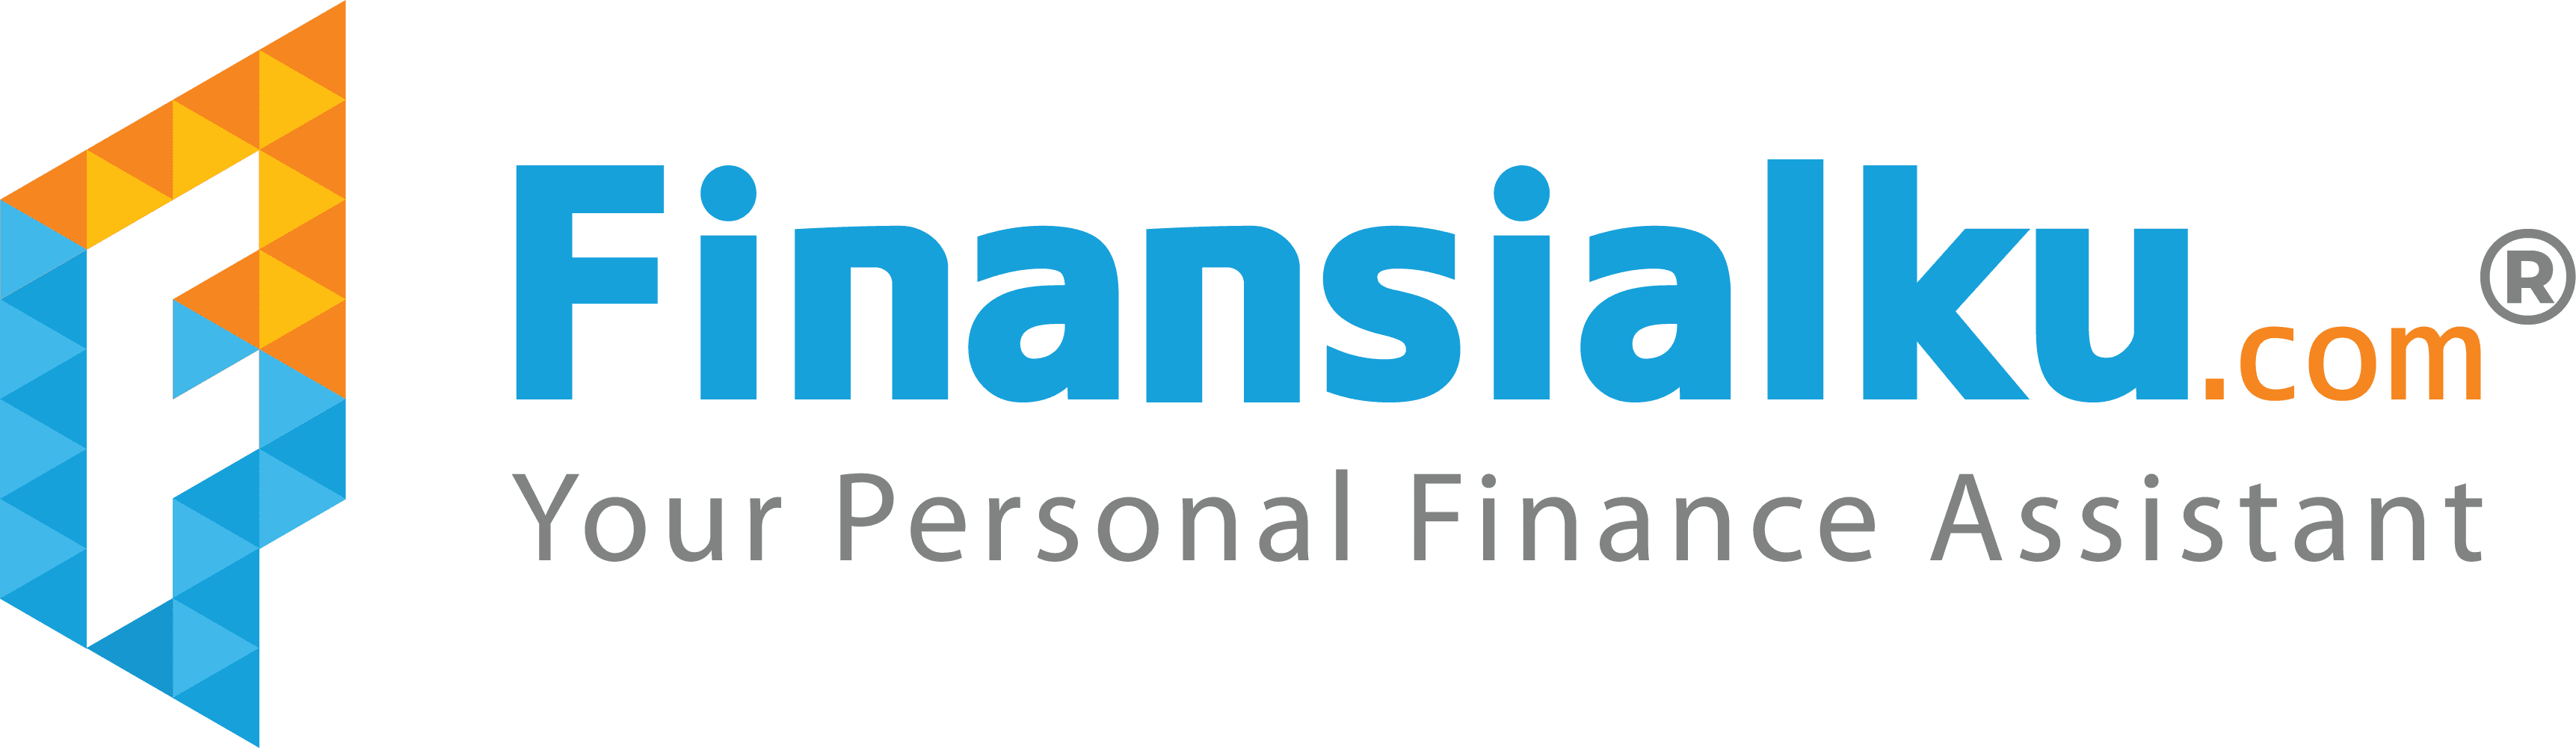 Logo Finansialku